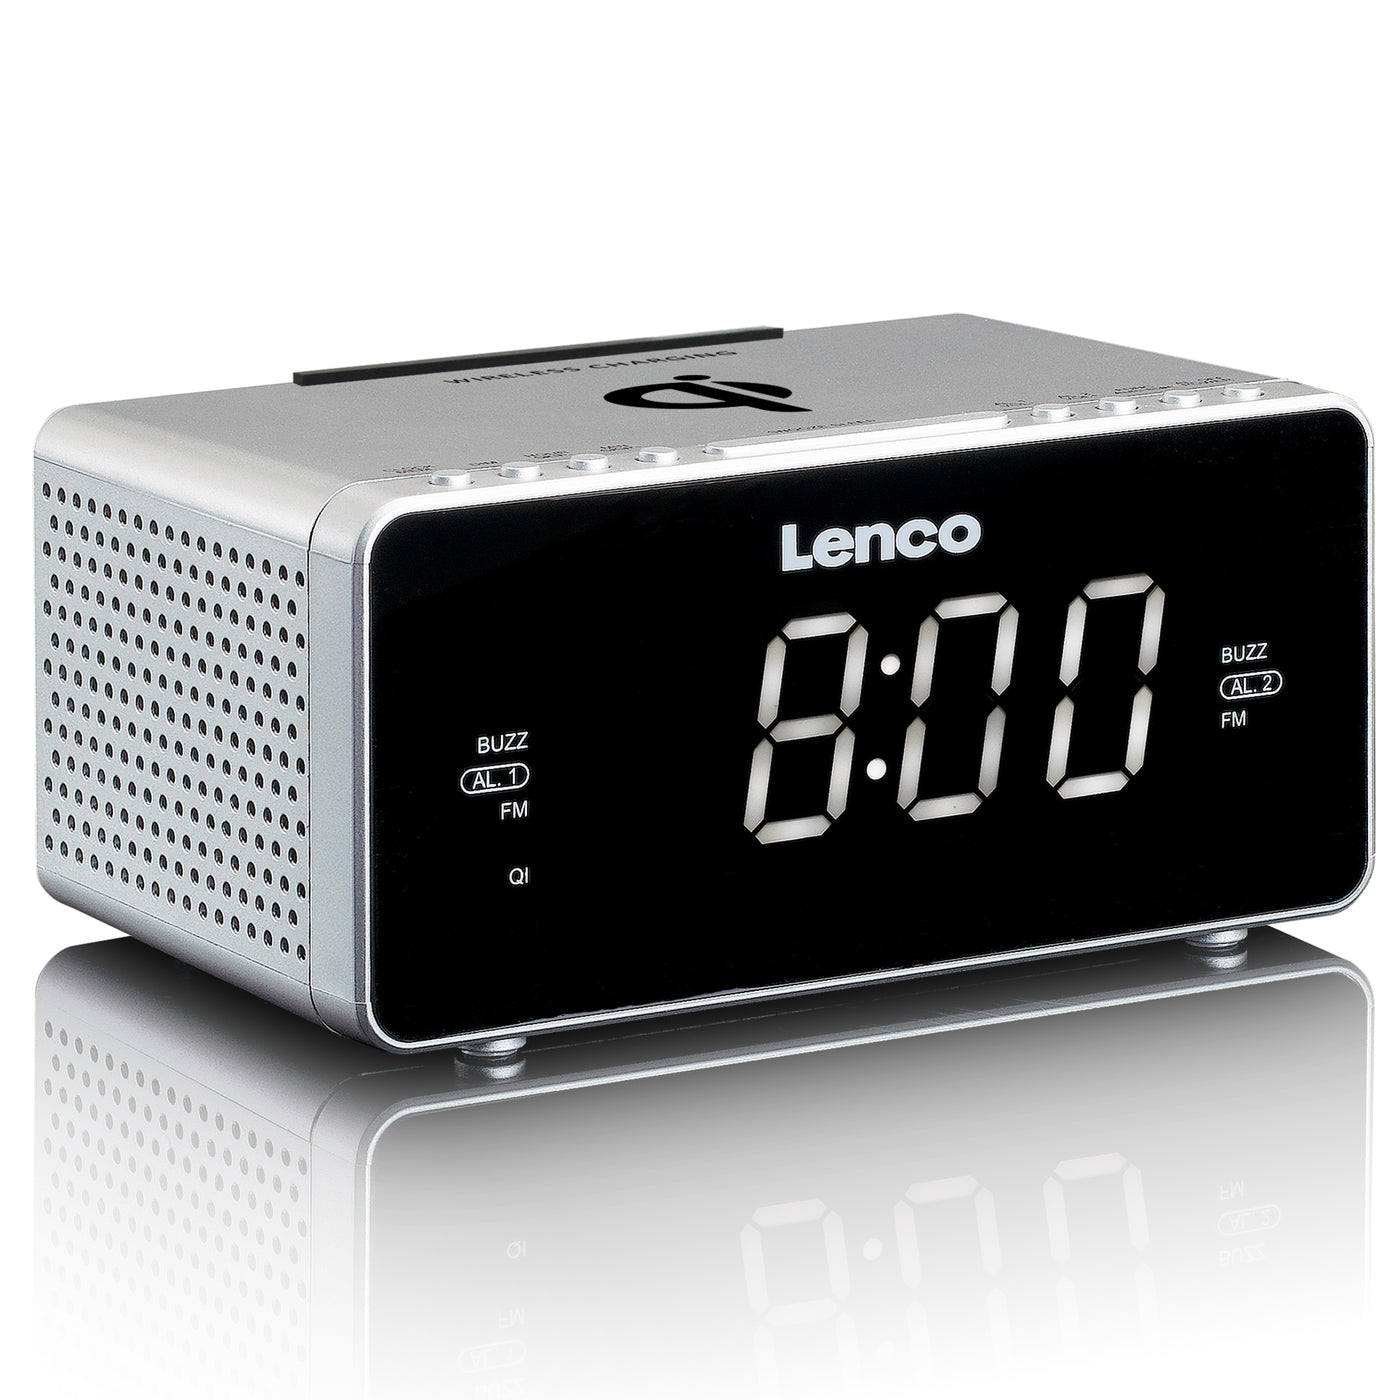 Lenco CR-550SI - Radio-réveil FM stéréo avec USB et chargeur de smartphone sans fil Qi - Argent